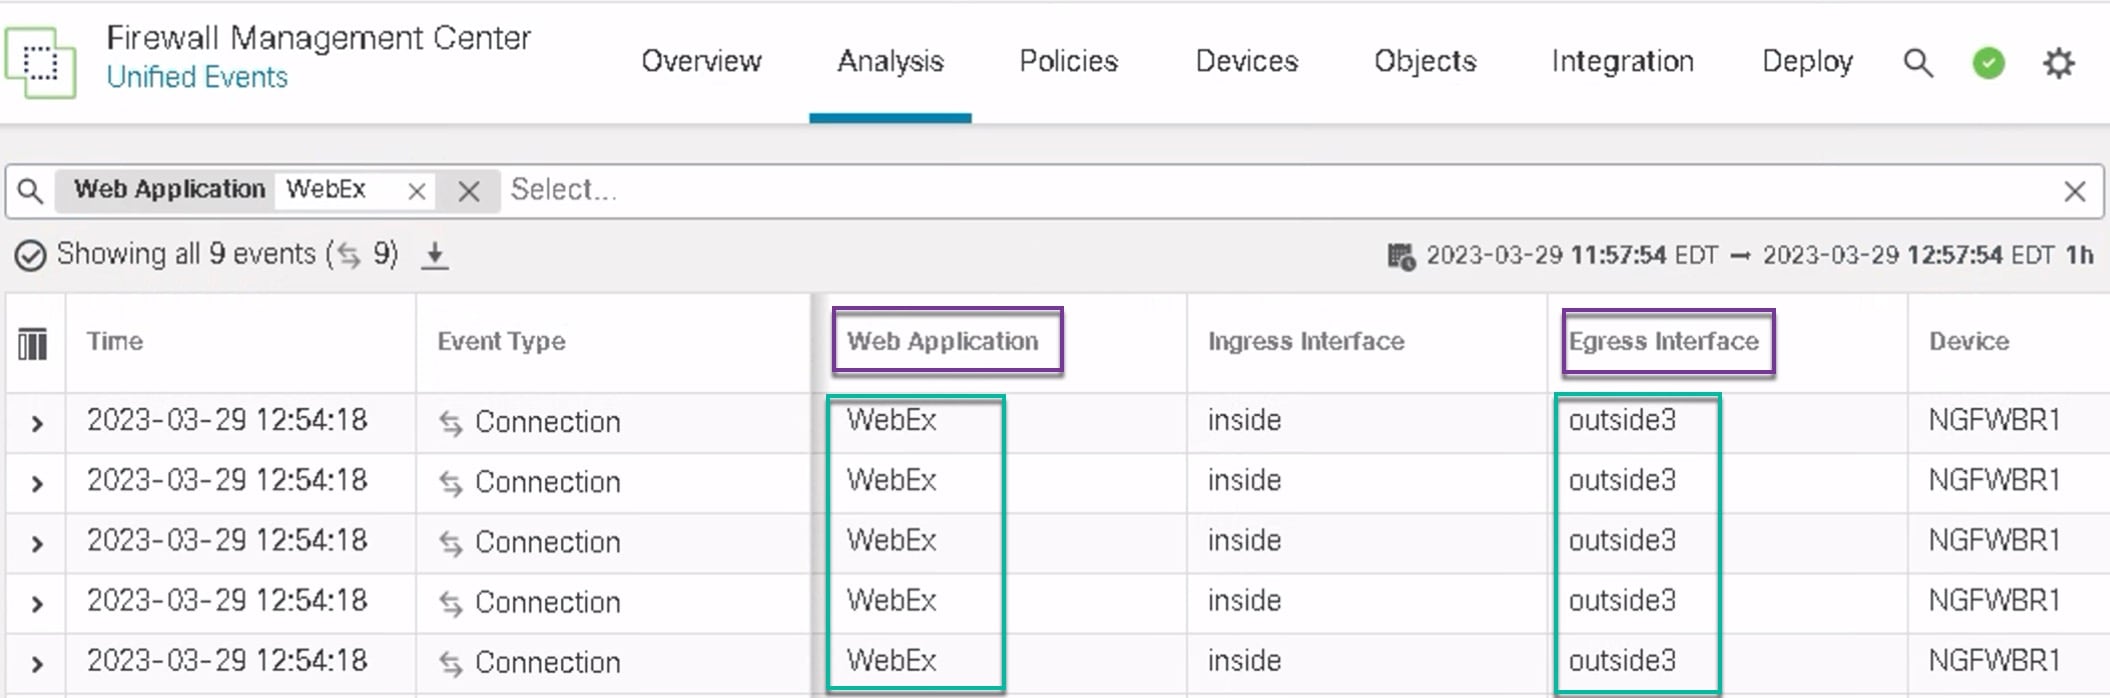 在图中，WebEx 应用流量通过 outside3 接口发出，如“统一事件”(Unified events) 页面所示。